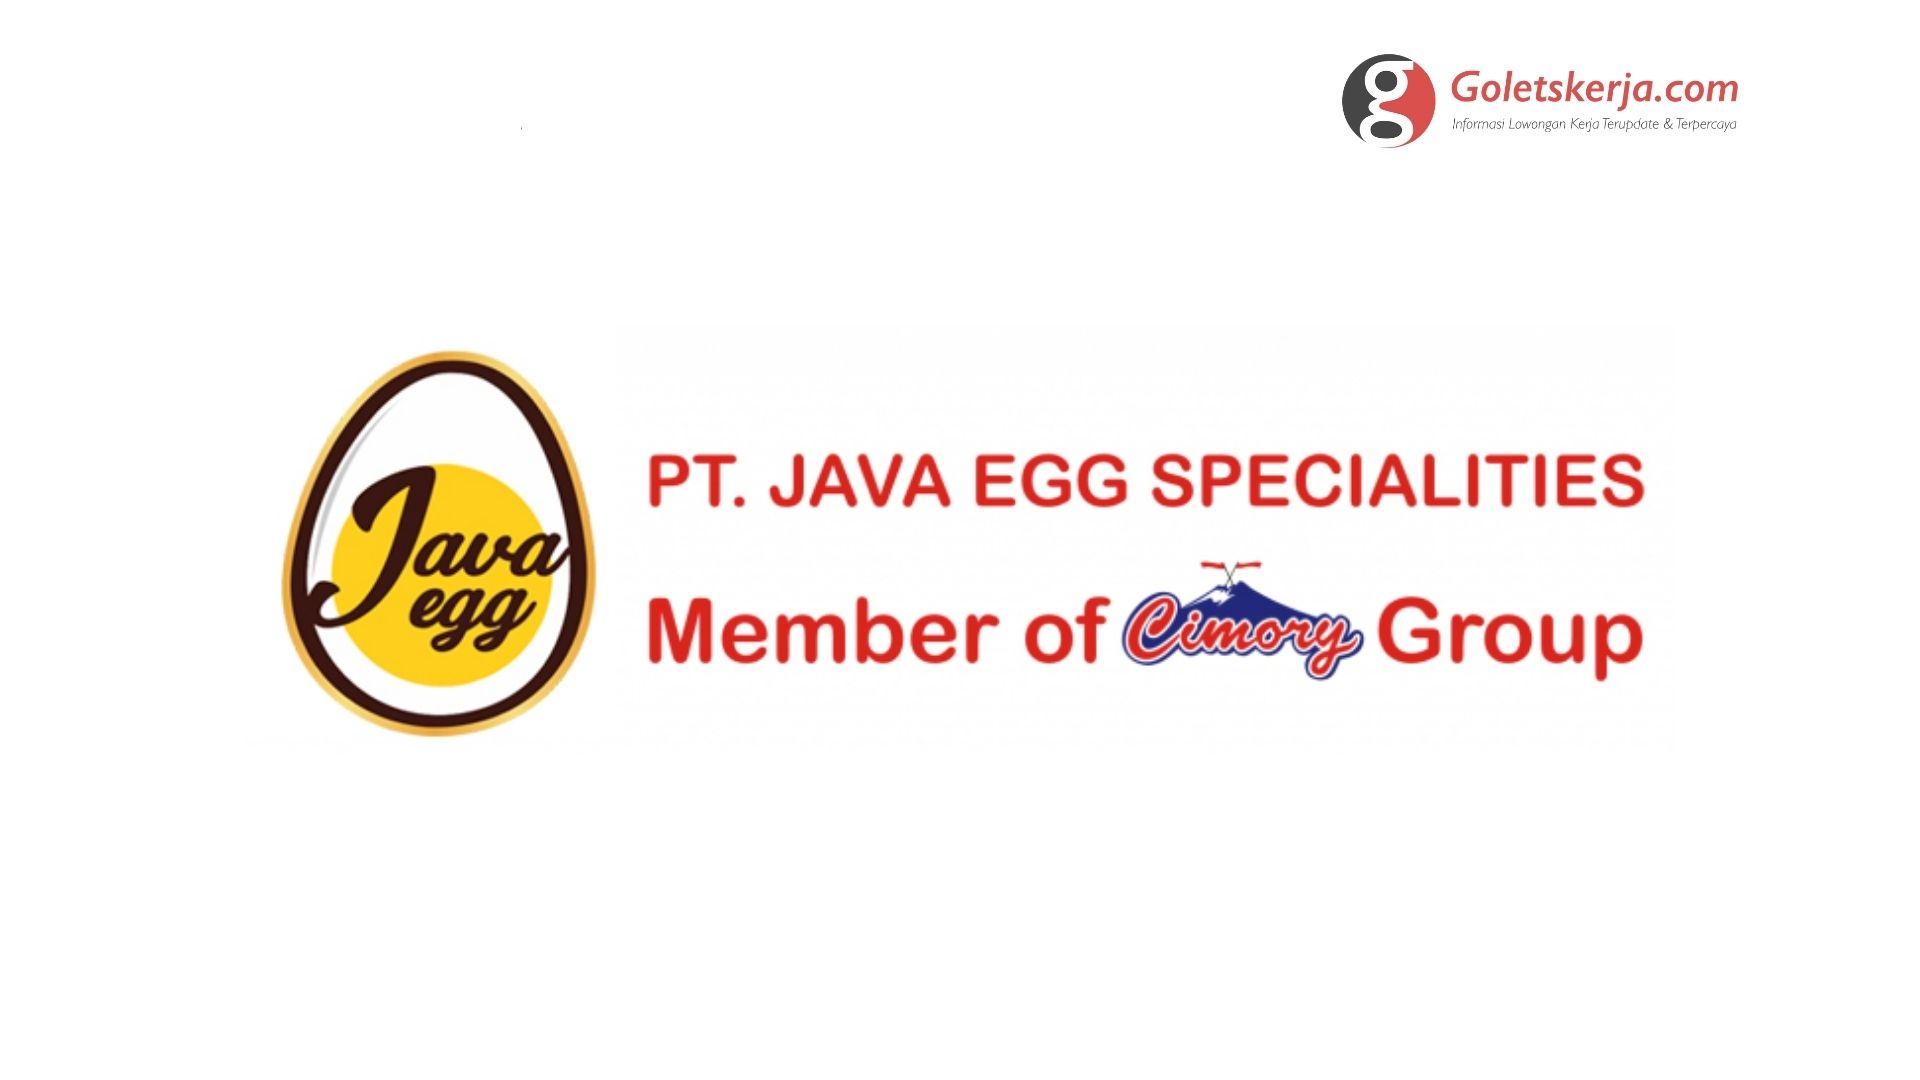 Lowongan Kerja PT Java Egg Specialities (Member Of Cimory Group)